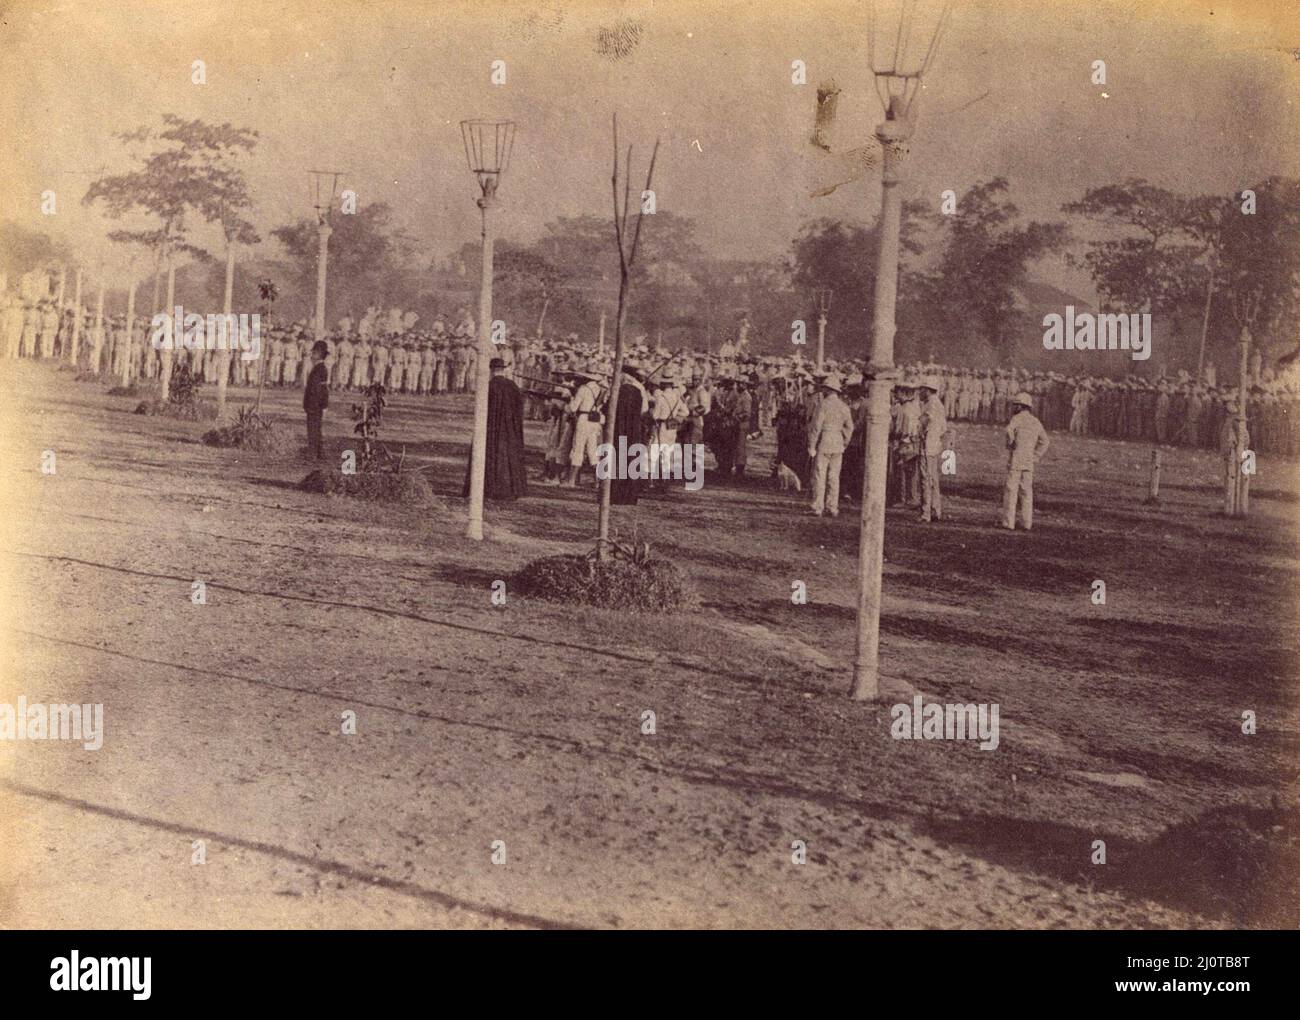 L'exécution de José Rizal. José Rizal, José Protasio Rizal Mercado y Alonso Realonda (1861 – 1896) nationaliste philippin, écrivain et math durant la fin de la période coloniale espagnole des Philippines. Il est considéré comme le héros national (pabansang bayani) des Philippines. Banque D'Images